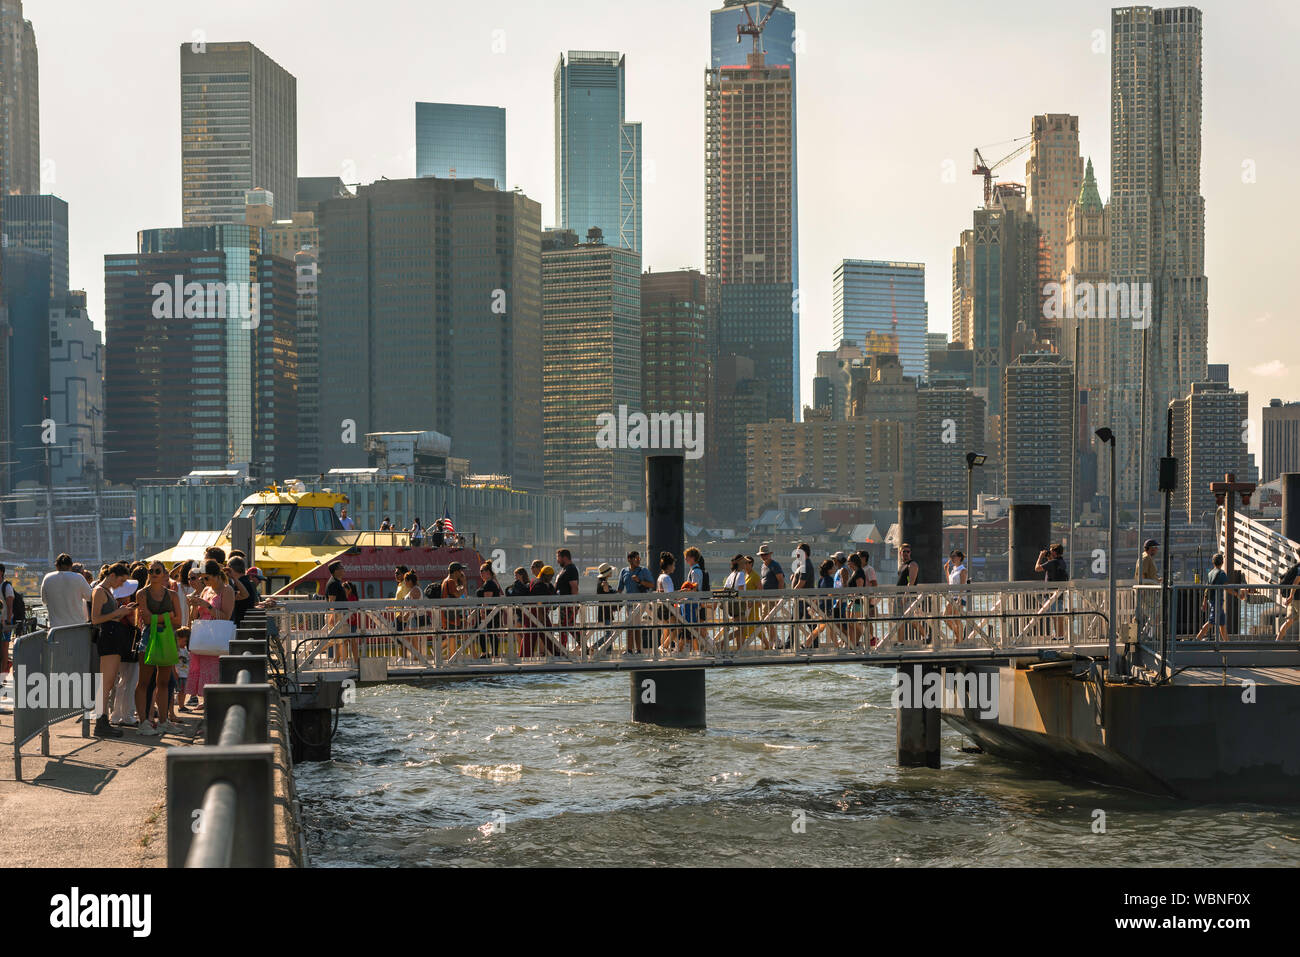 Ferry East River, vue en été de personnes traversant le pont d'embarquement de l'East River en ferry du Port de Brooklyn, New York City, USA Banque D'Images